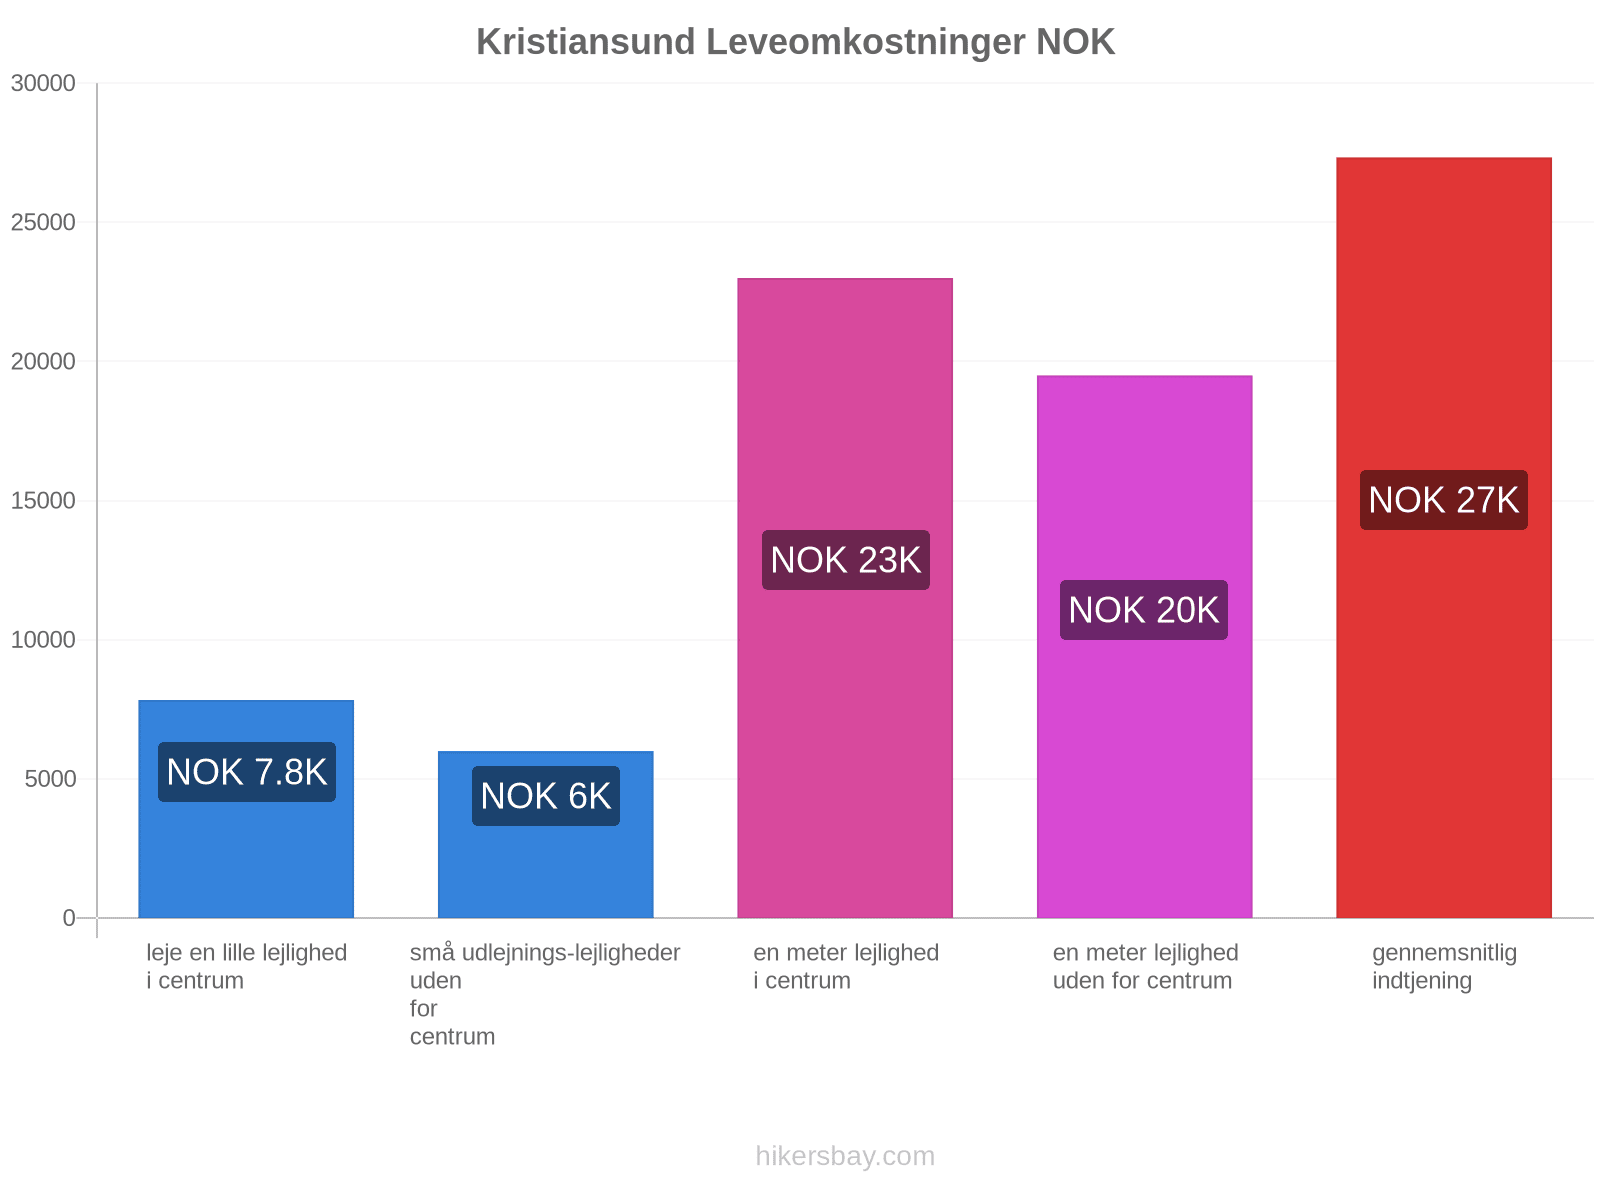 Kristiansund leveomkostninger hikersbay.com